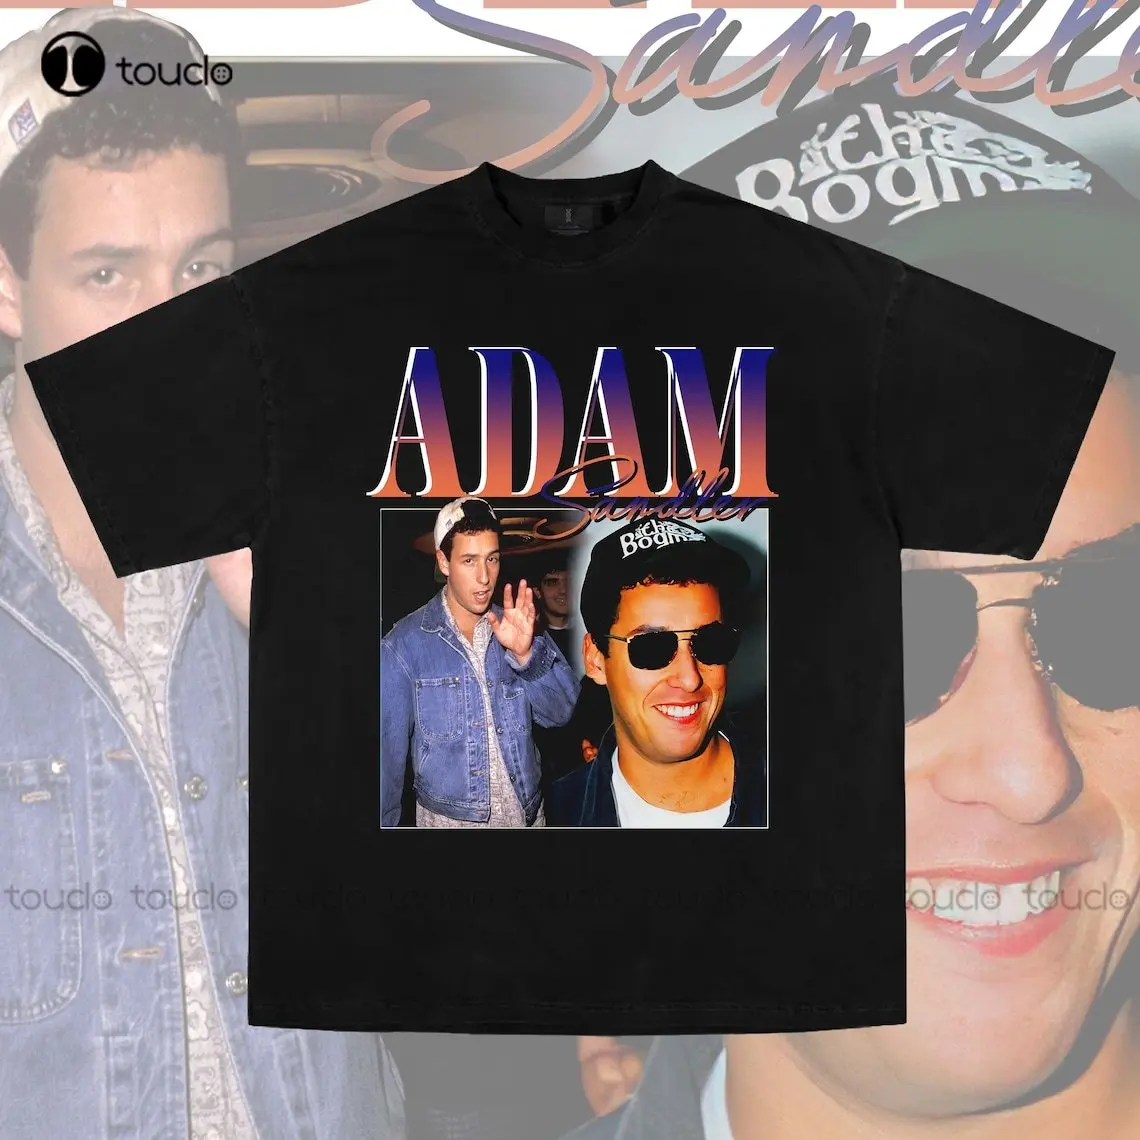 

Дизайнерская мужская футболка с изображением Адама сандлера, индивидуальные футболки для подростков, Футболки унисекс с цифровым принтом, забавная уличная одежда с рисунком из мультфильма